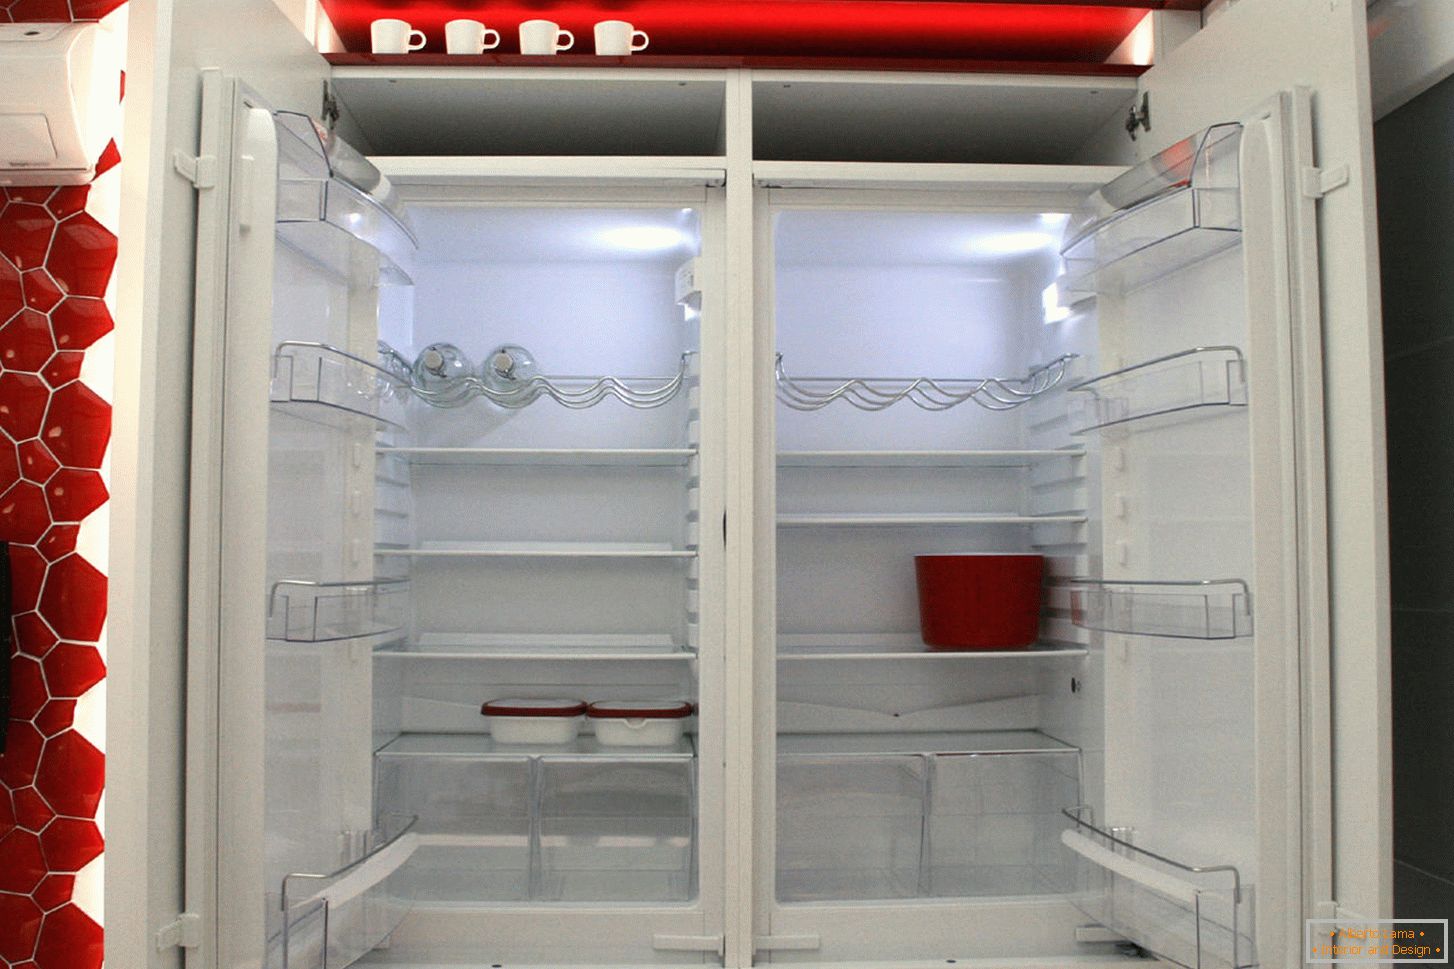 Réfrigérateur moderne à l'intérieur de la cuisine